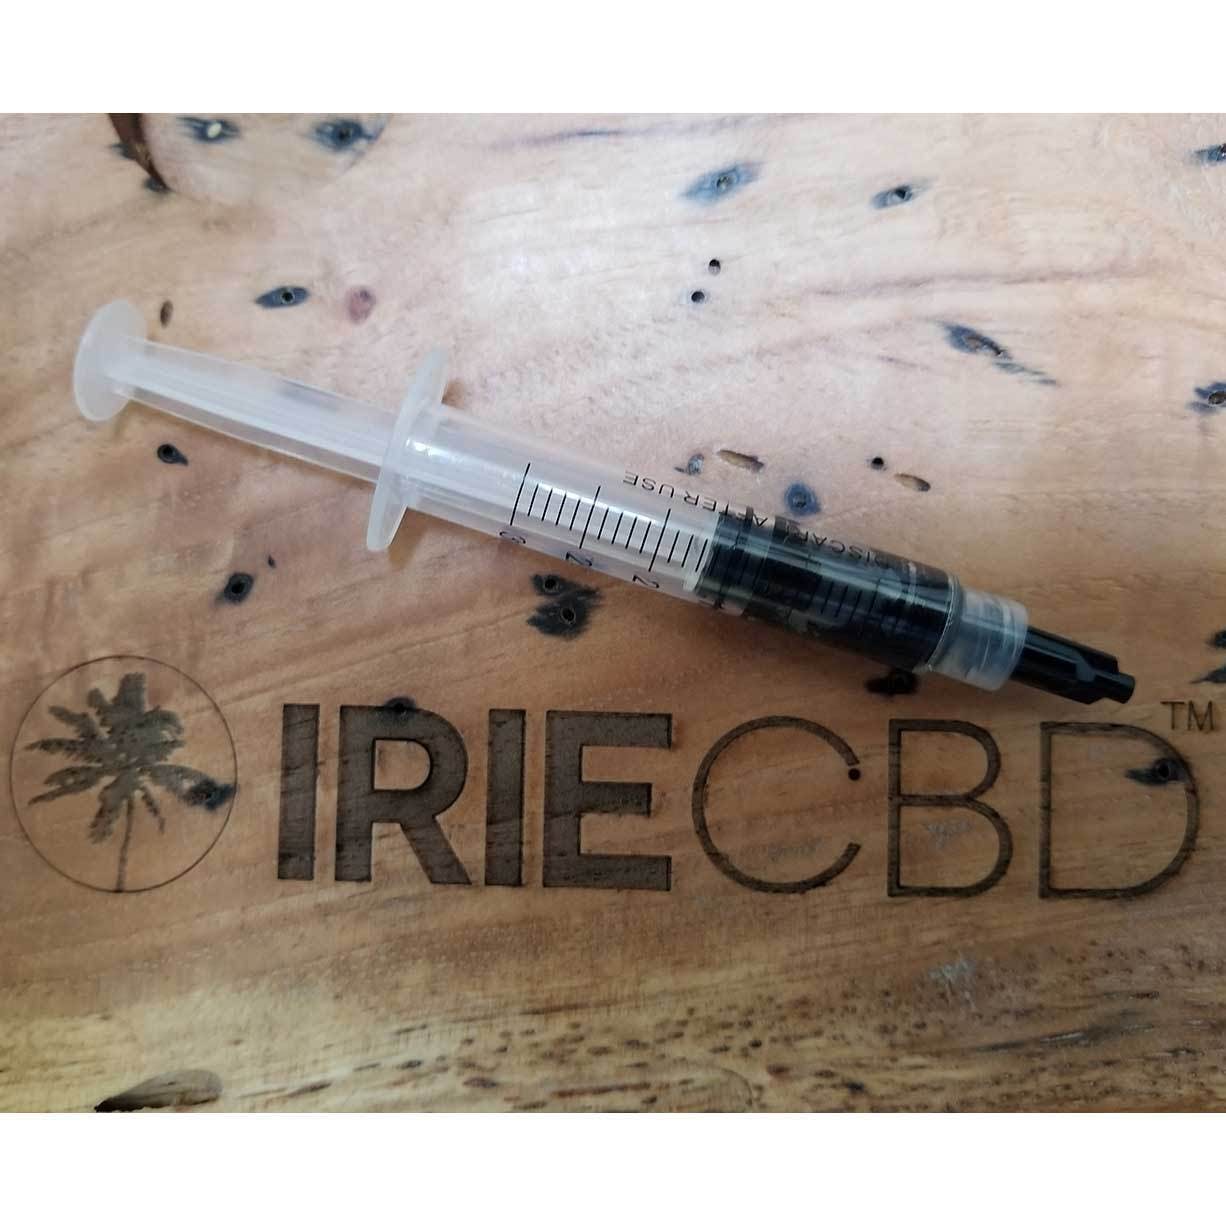 concentrate-irie-cbd-rso-oil-syringe